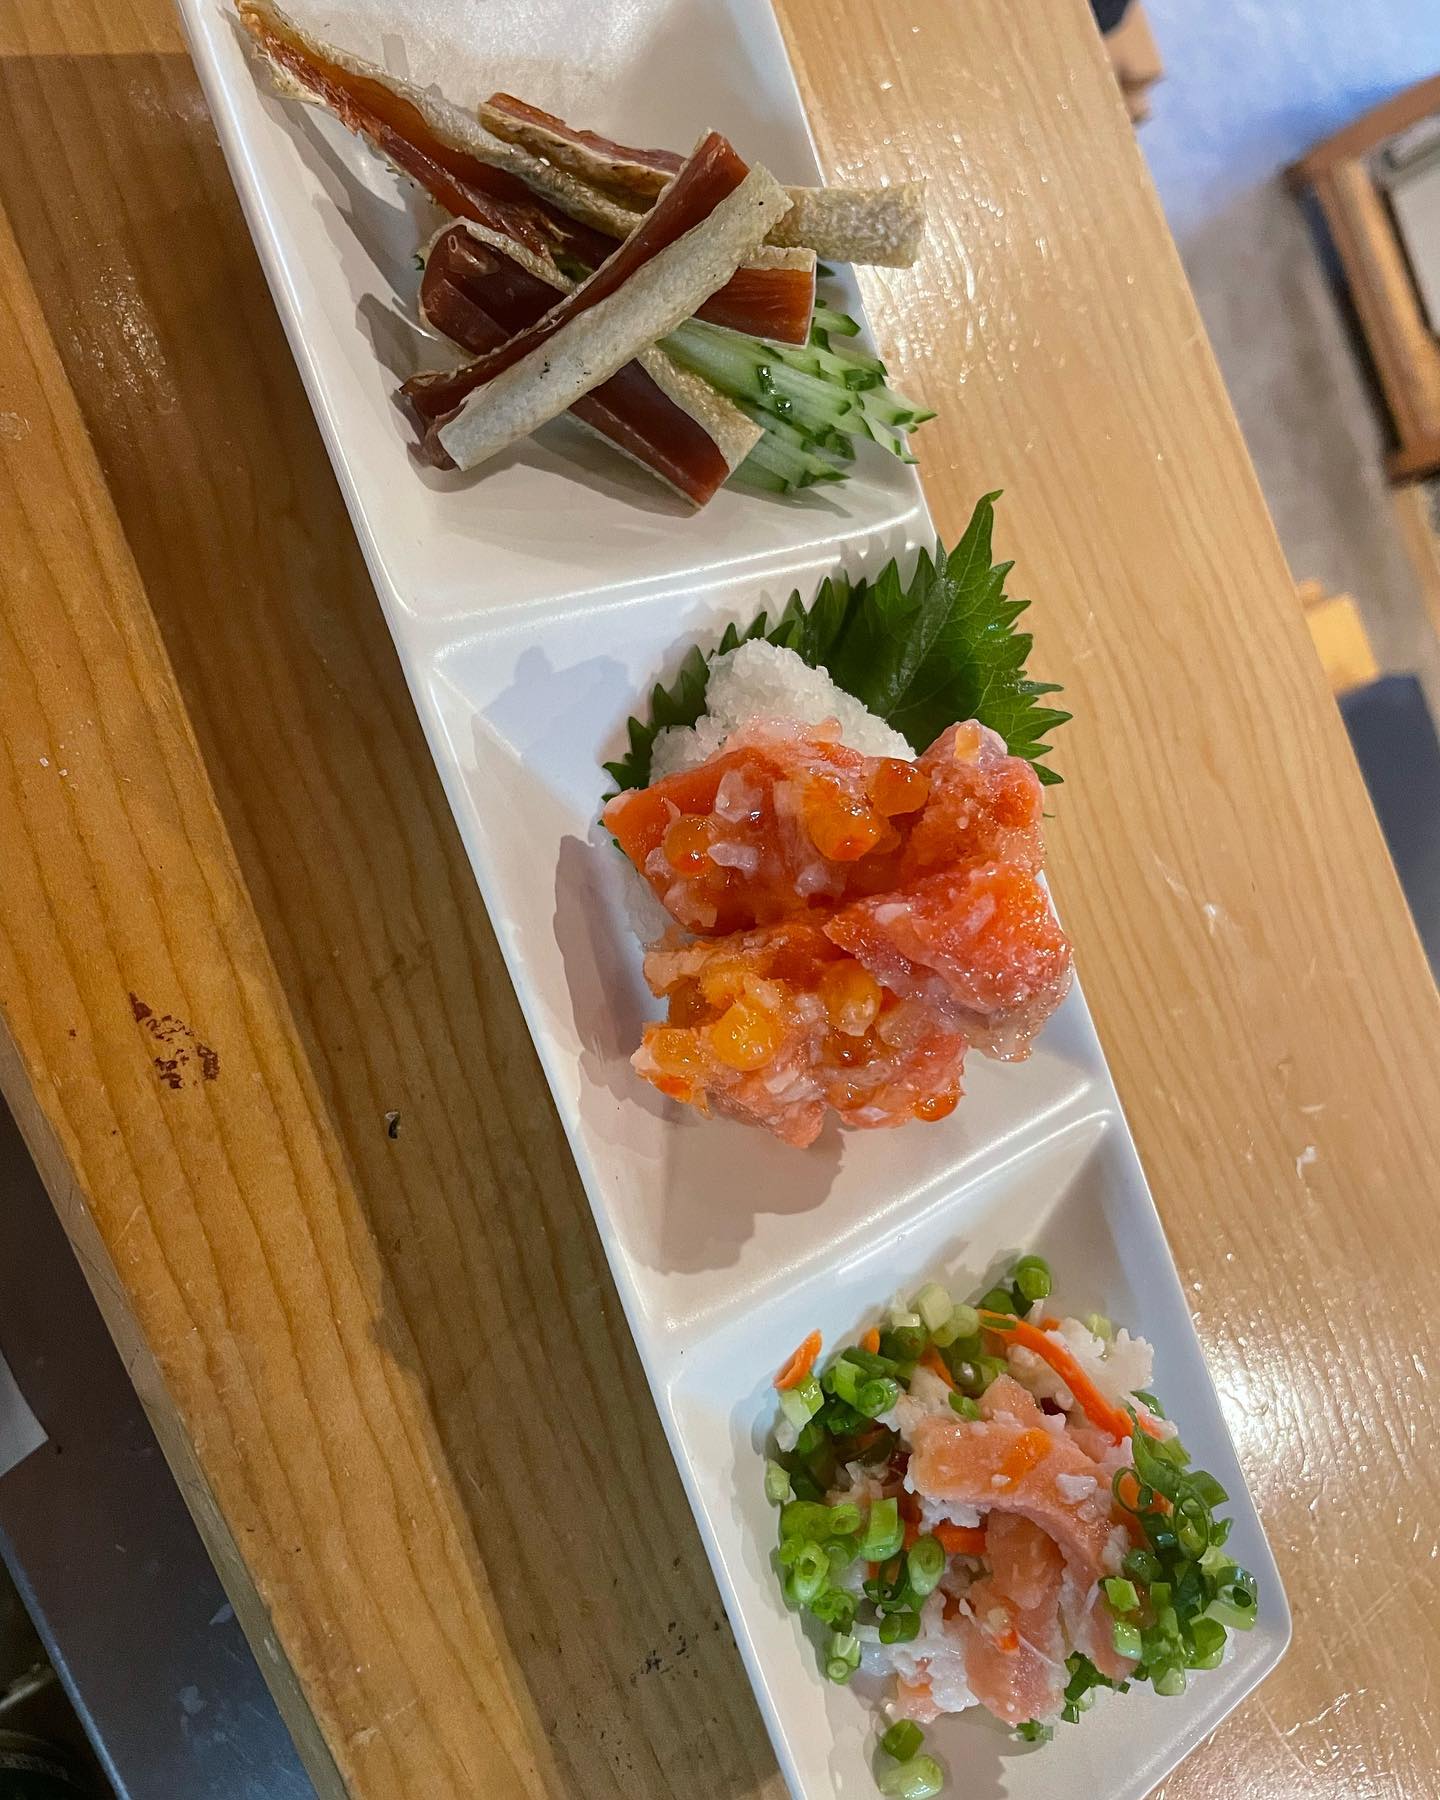 北海道より秋鮭の珍味達が届きました(//∇//)

左から、鮭とば、鮭とイクラの親子ルイベ、鮭の飯寿司となっています。
どれも日本酒との相性がとても良いです！
是非、鮭の味に負けない力強い日本酒と一緒にどうぞっ！